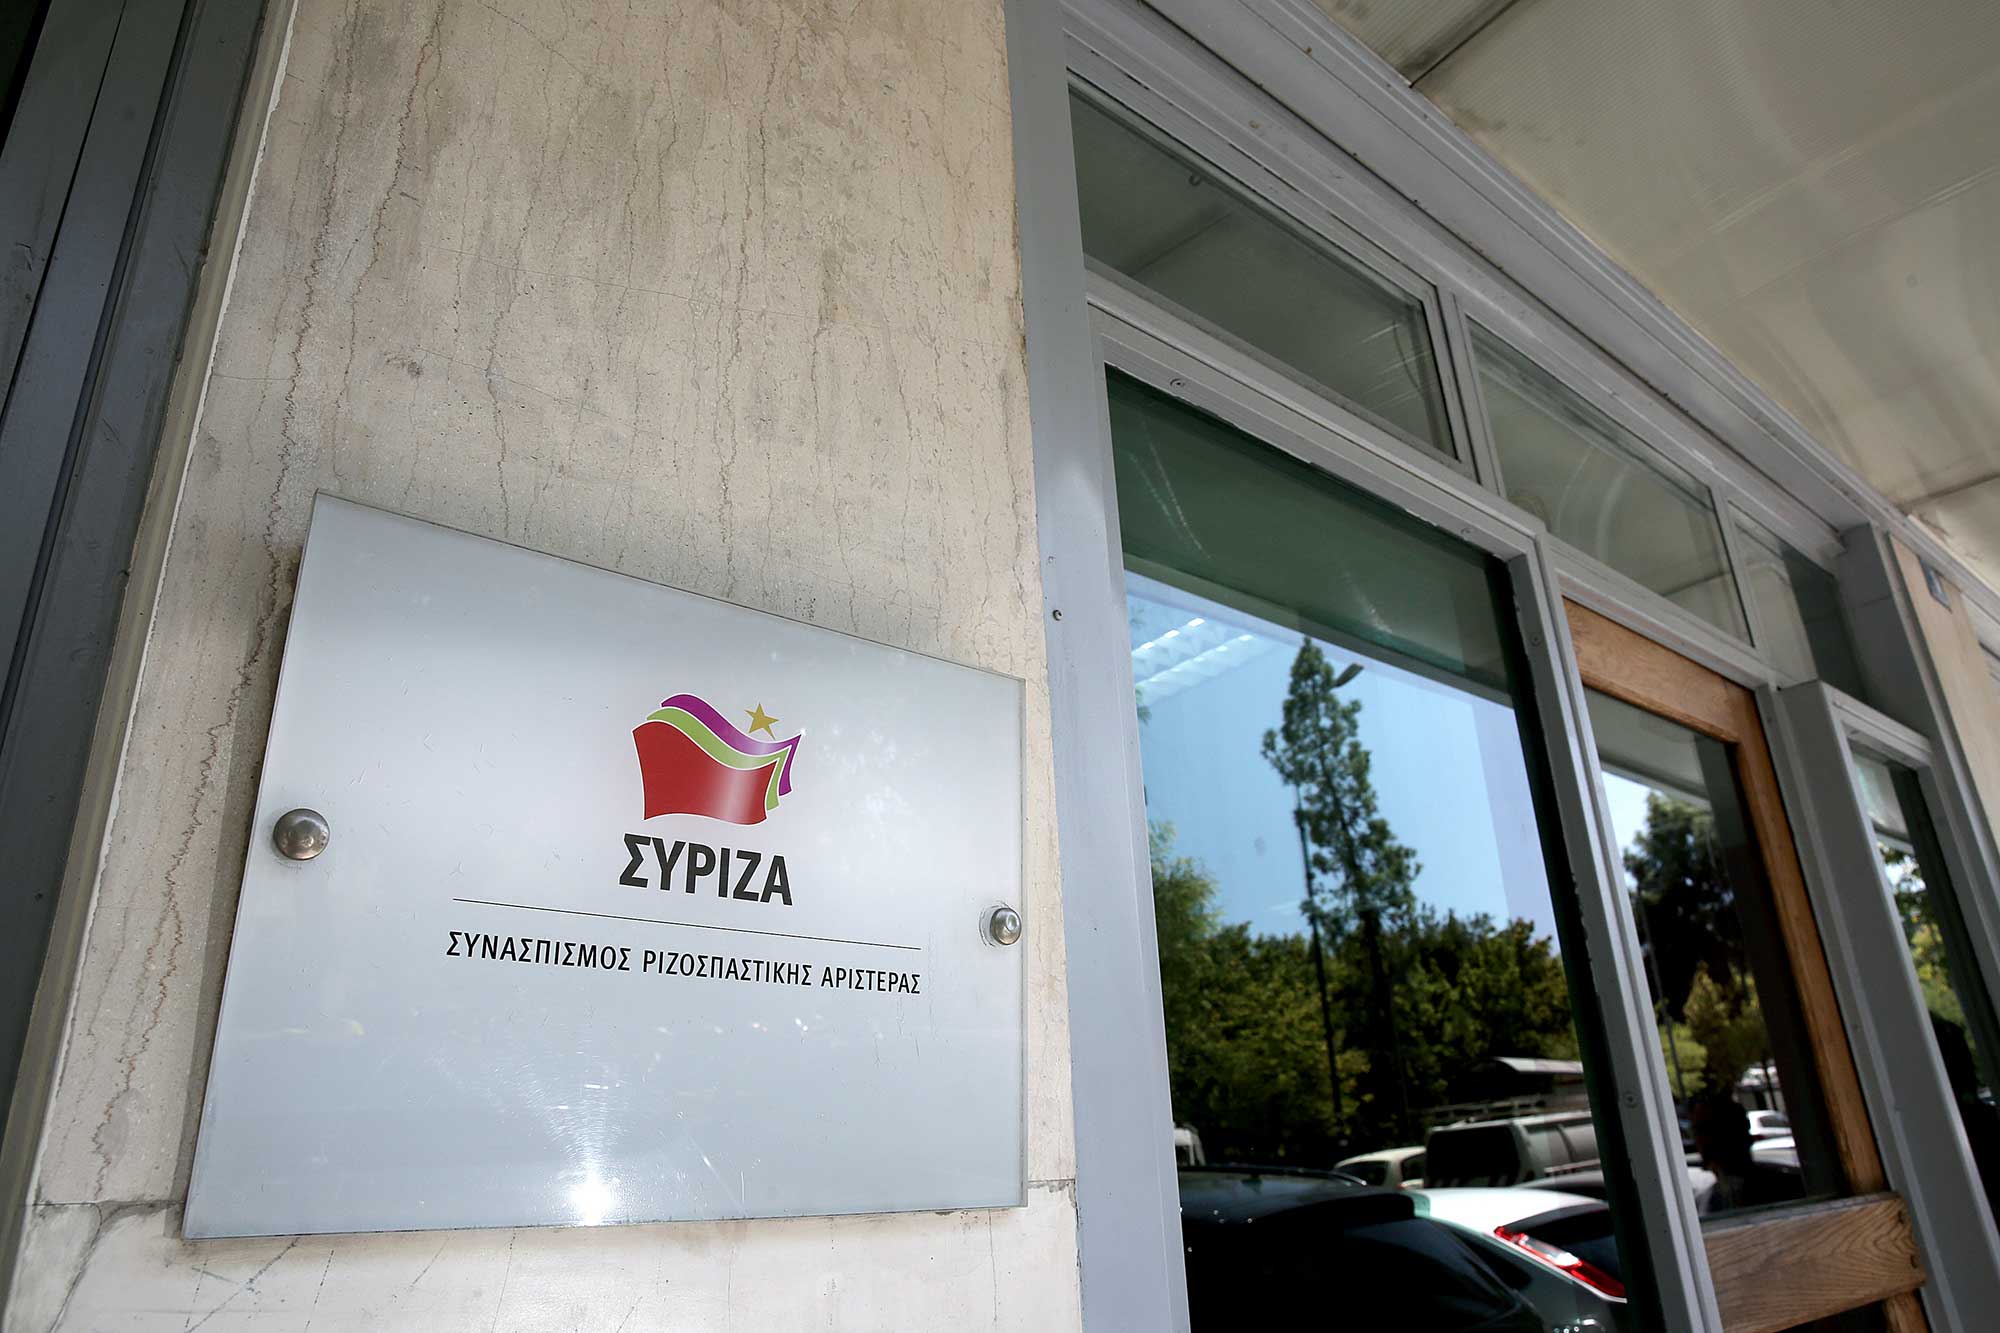 Για τις 22-23 Οκτωβρίου αναβλήθηκε η συνεδρίαση της ΚΕ του ΣΥΡΙΖΑ λόγω της απώλειας του Αλέξανδρου Νικολαΐδη